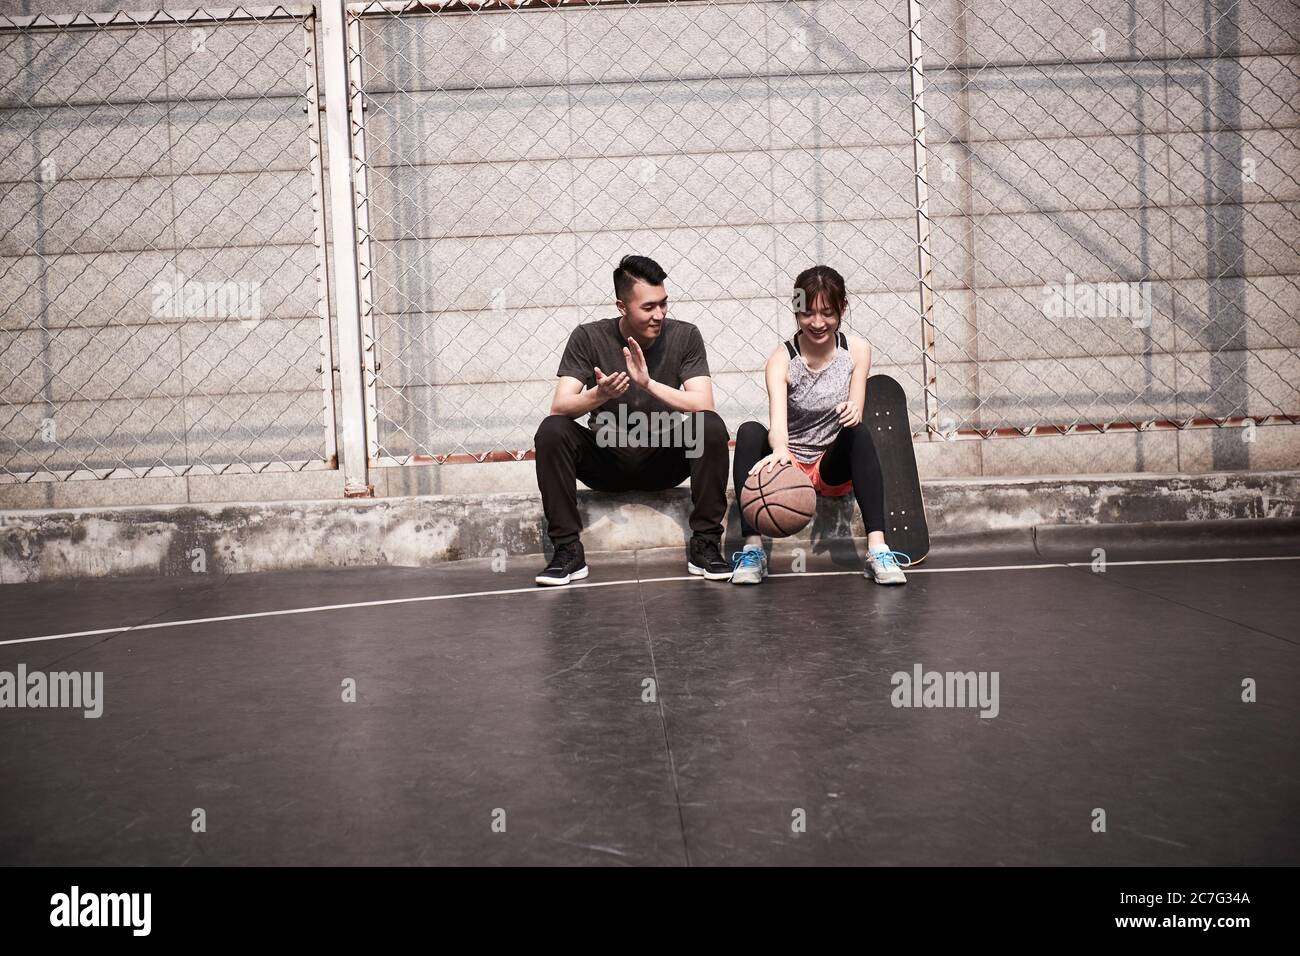 jeune homme et femme asiatique adulte se reposant et jouant avec le basket-ball sur le terrain Banque D'Images